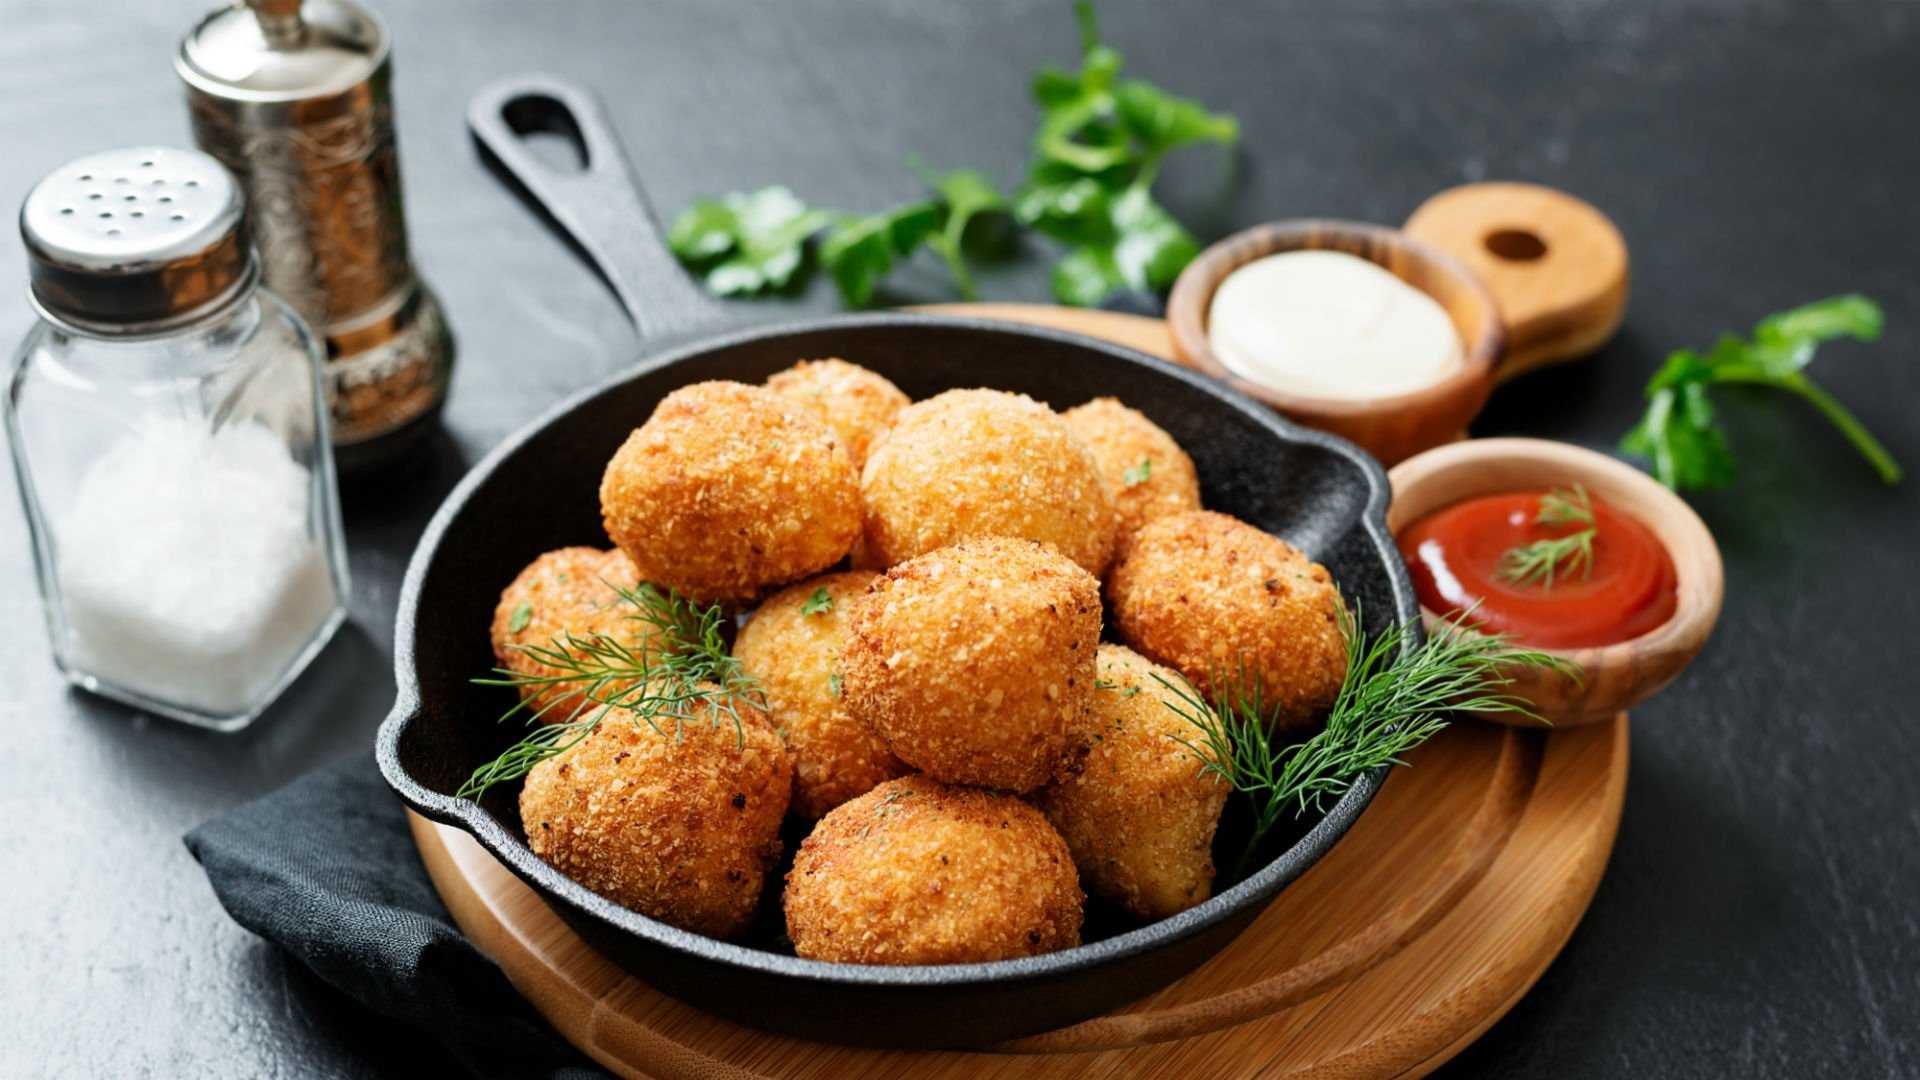 Картофельные шарики: пошаговый рецепт с фото и видео. как приготовить картофельные шарики из пюре с сыром?